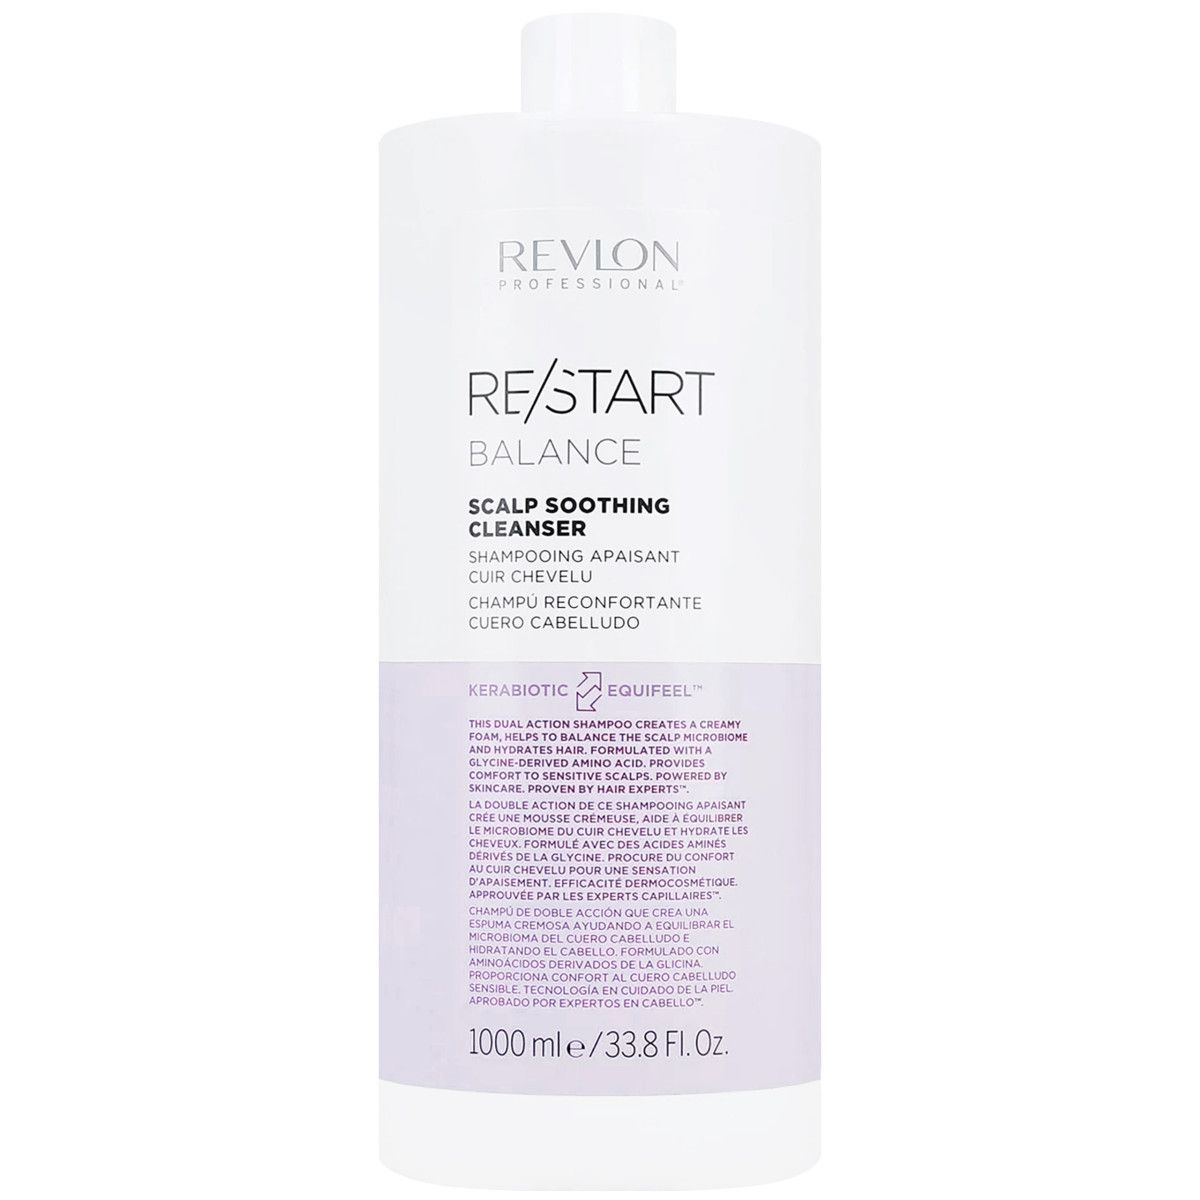 Revlon Restart Balance Shampoo - szampon balansujący do skóry głowy, 1000ml